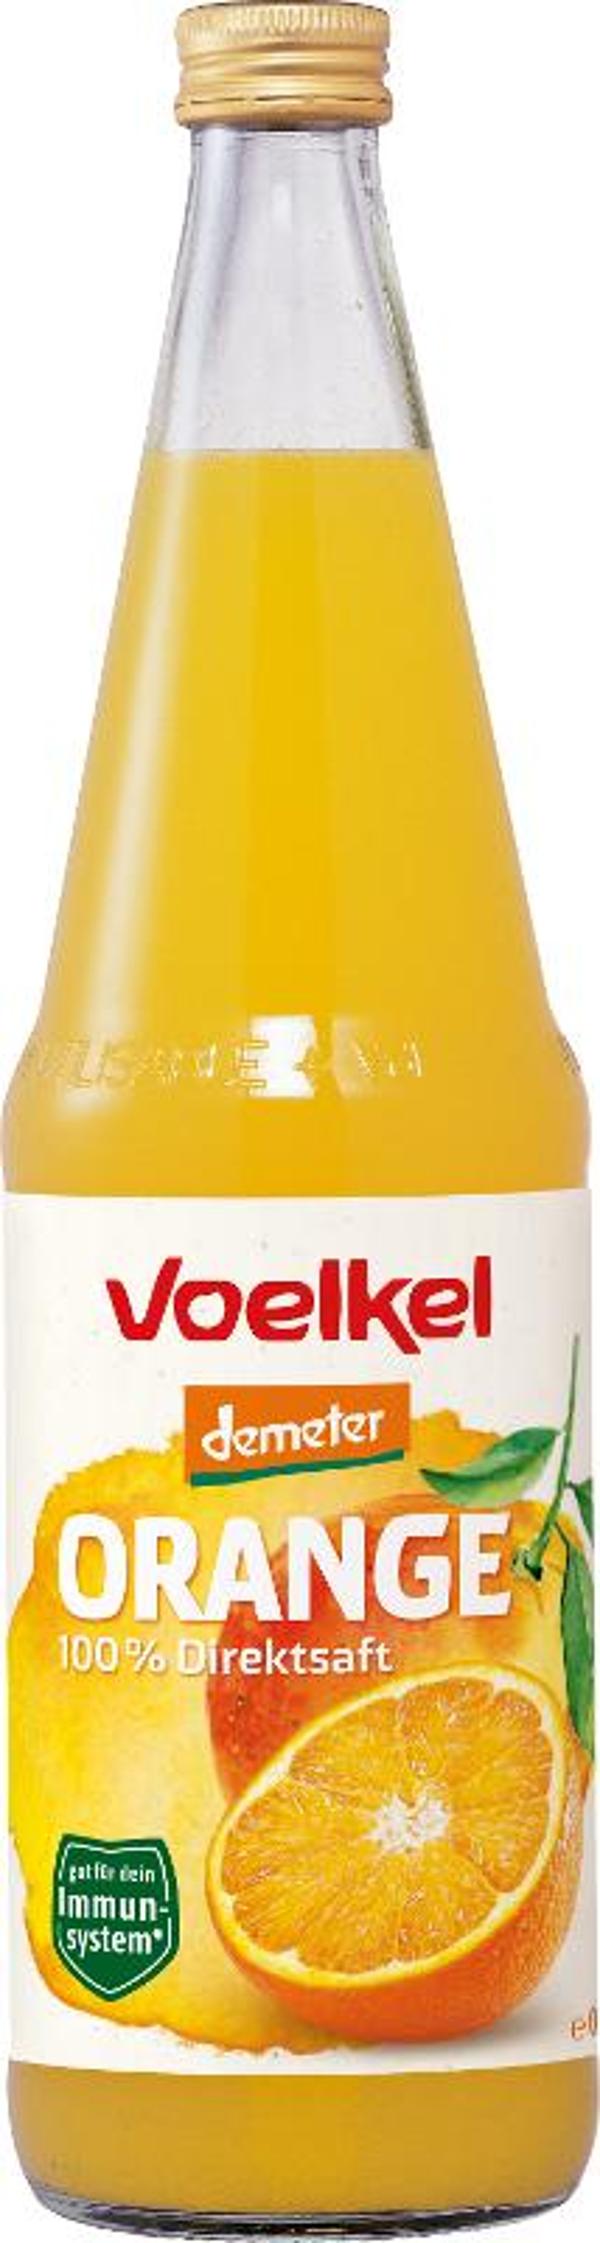 Produktfoto zu Orangensaft Demeter Voelkel